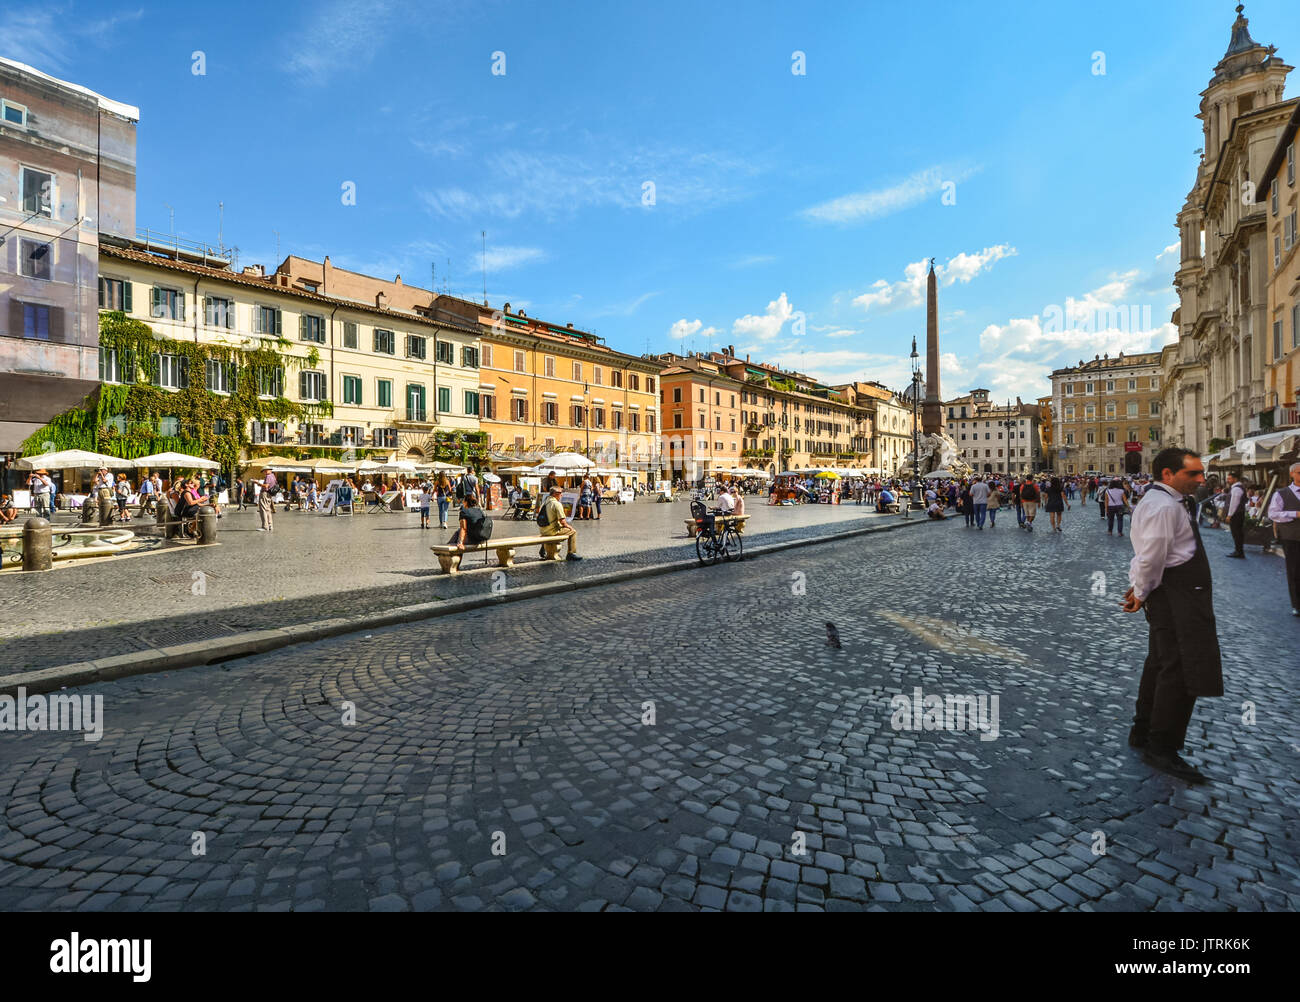 Ein Maitre d oder Oberkellner steht vor einem Café oder Restaurant in der Piazza Navona in Rom Italien an einem sonnigen Tag mit Touristen Stockfoto